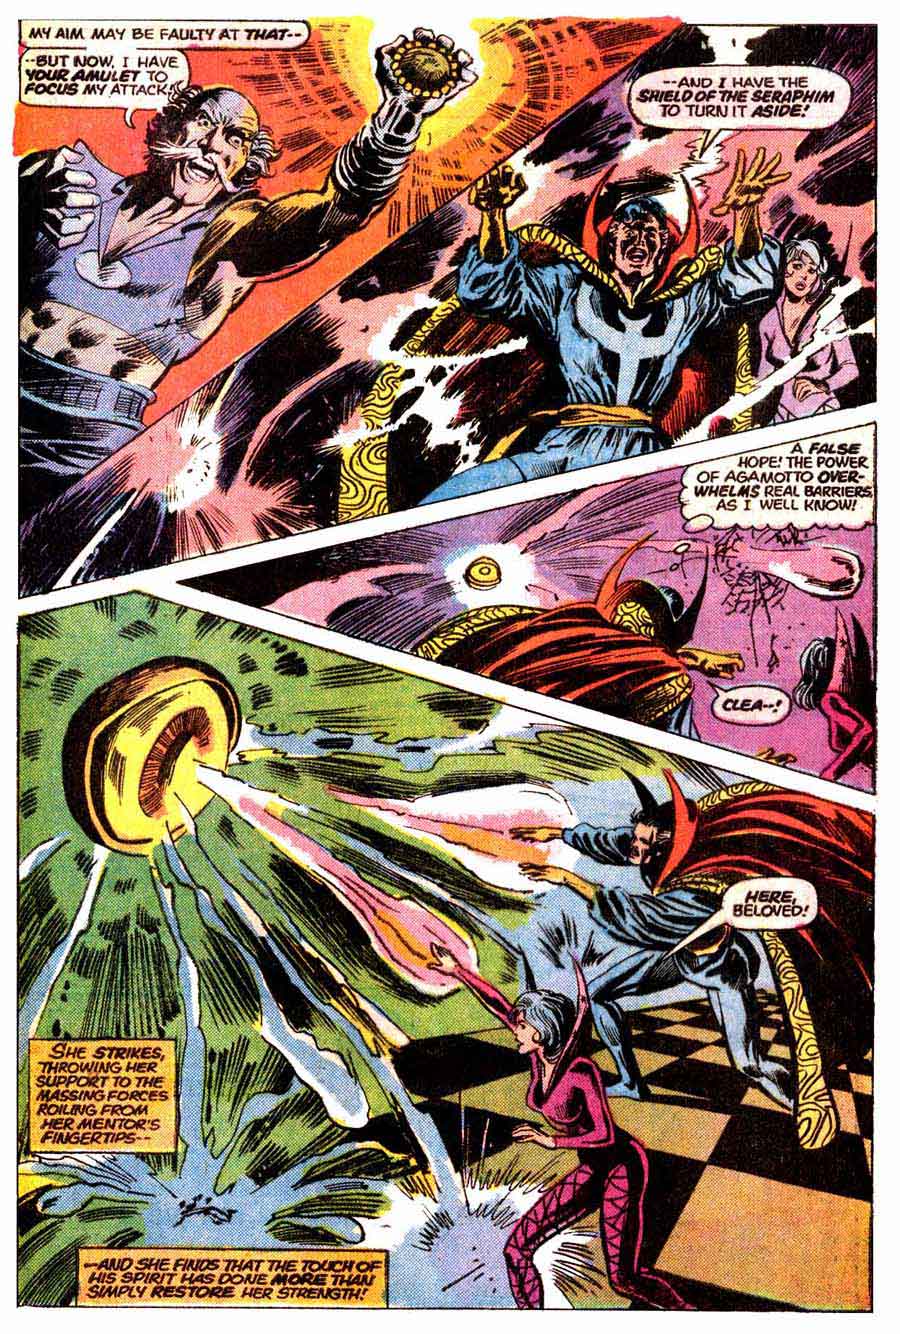 Frank Brunner bronze age 1970s marvel comic book page art - Doctor Strange v2 #5